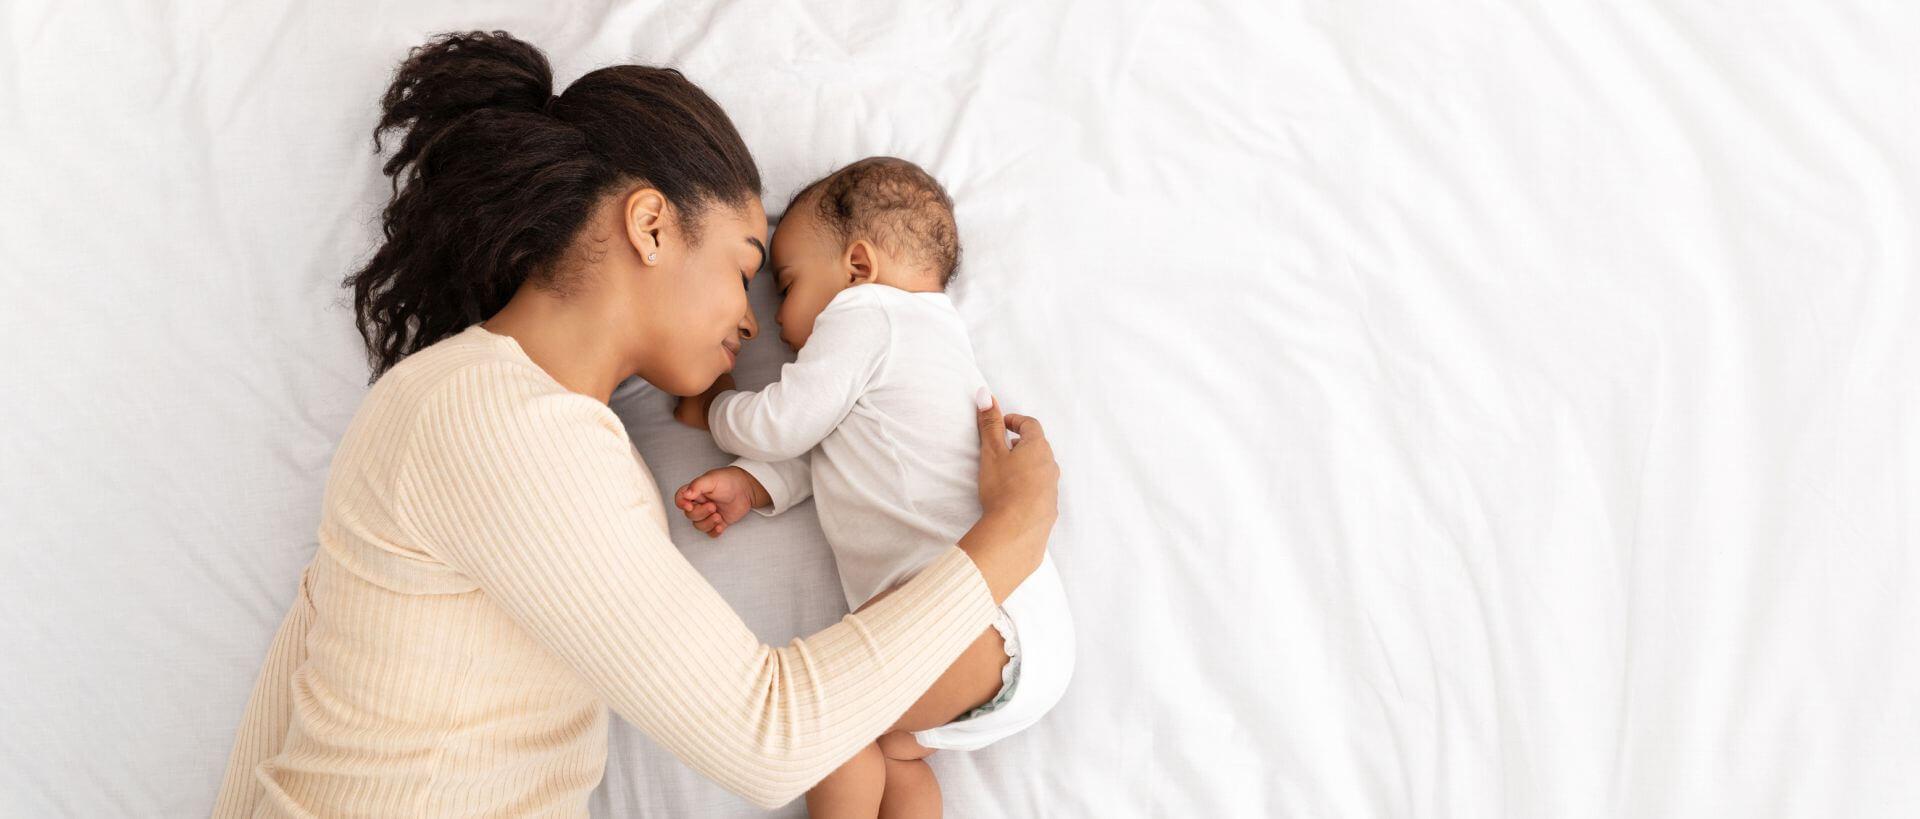 Das Risiko für den plötzlichen Kindstod ist unter normalen Umständen im Elternbett nicht erhöht.